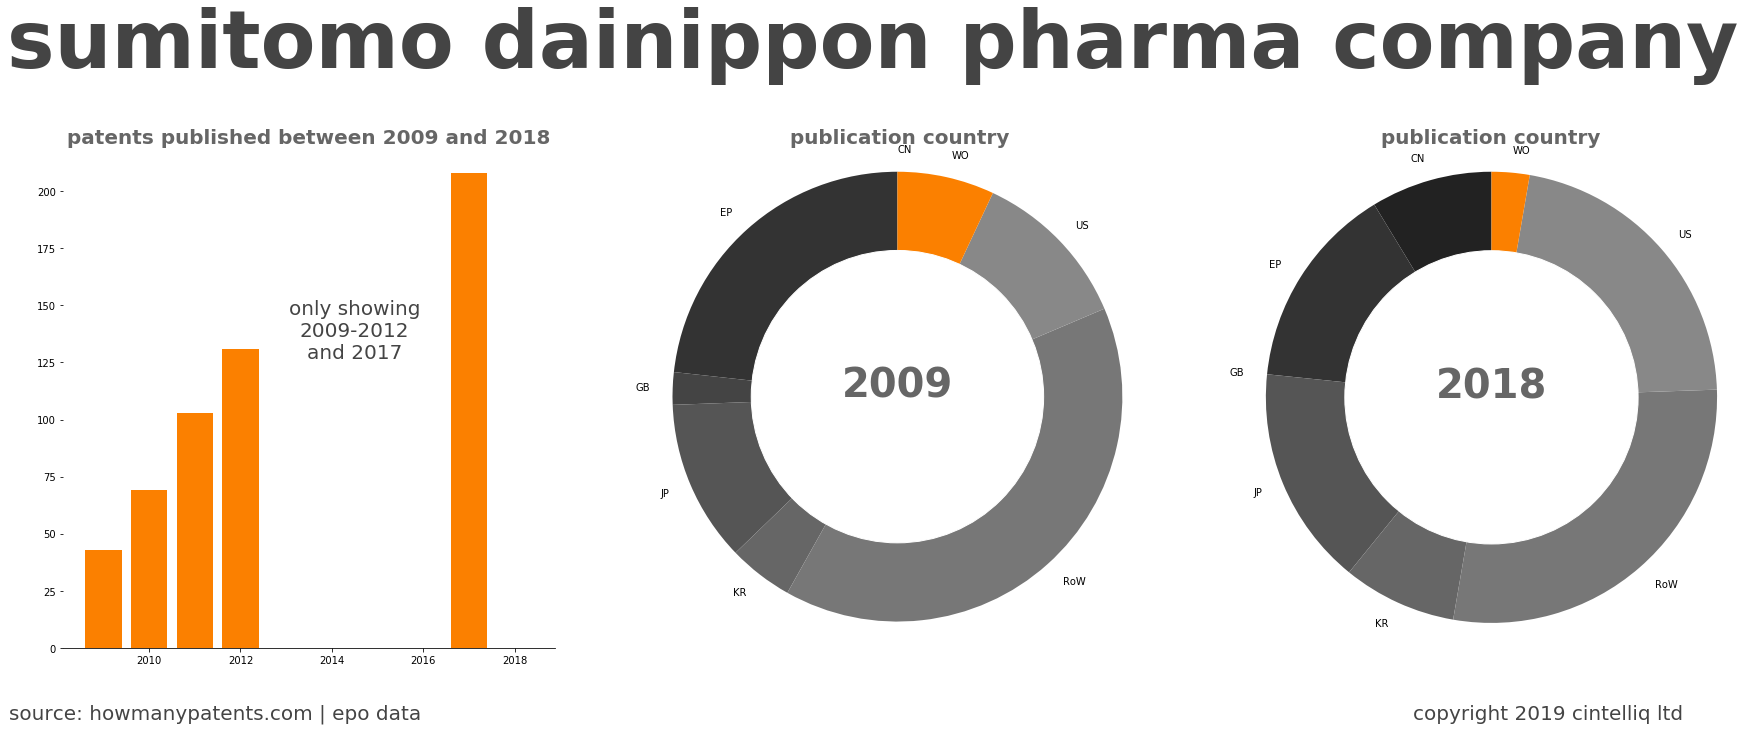 summary of patents for Sumitomo Dainippon Pharma Company